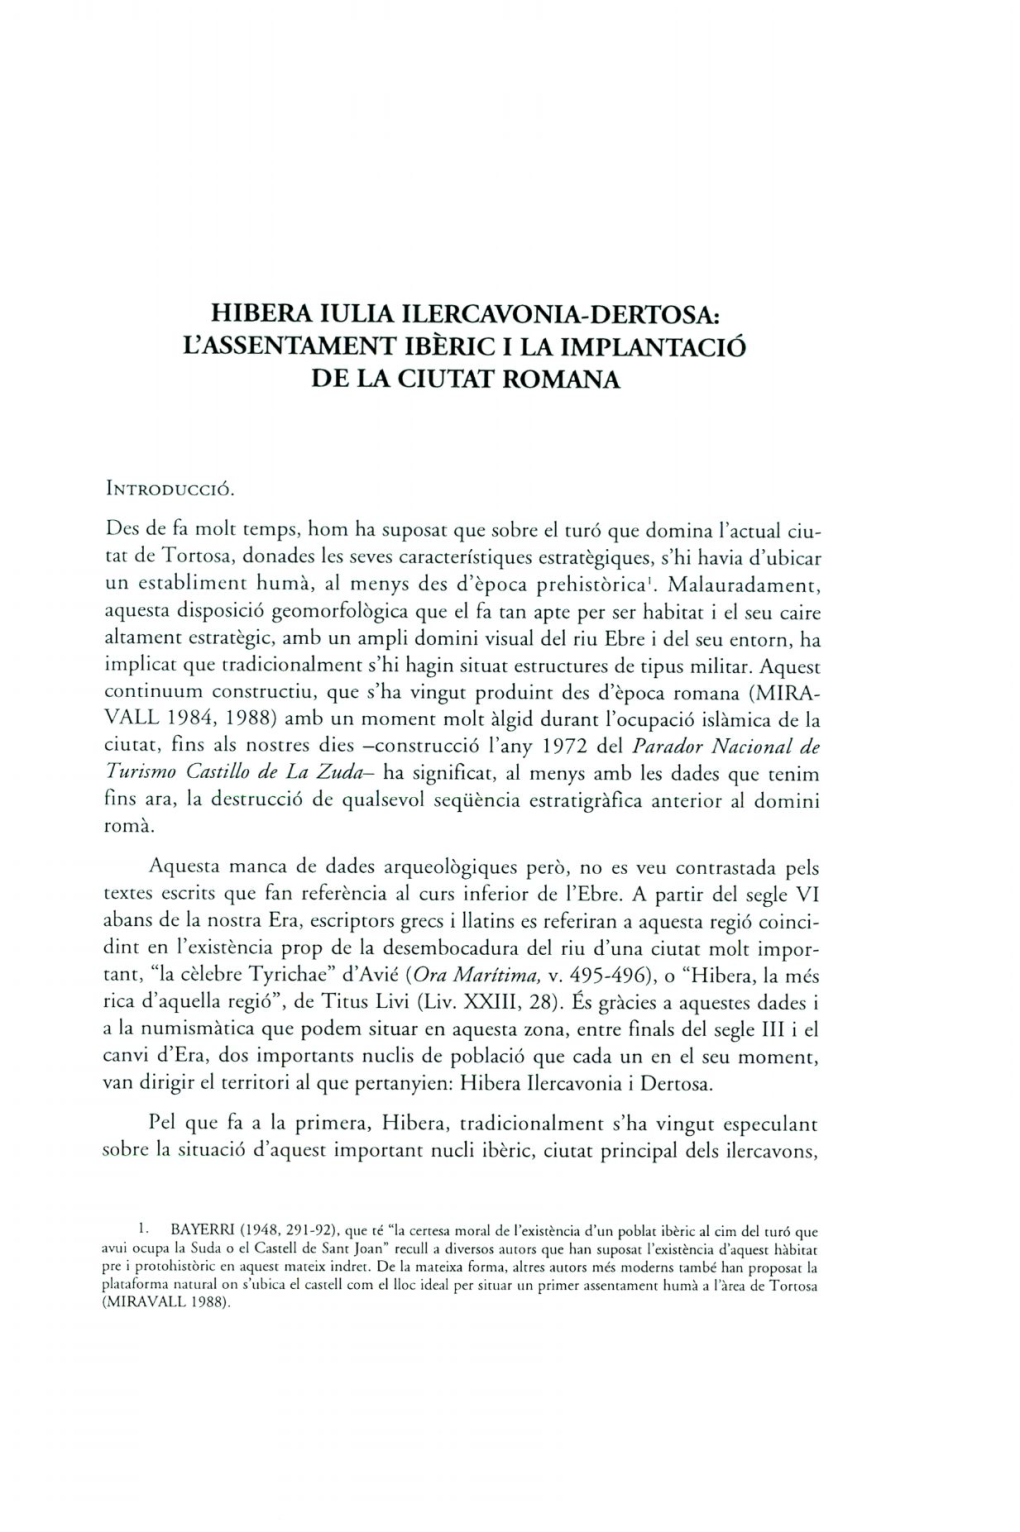 HIBERA Lulia ILERCAVONIA-DERTOSA: L'assentament IBÈRIC I LA IMPLANTACIÓ DE LA CIUTAT ROMANA